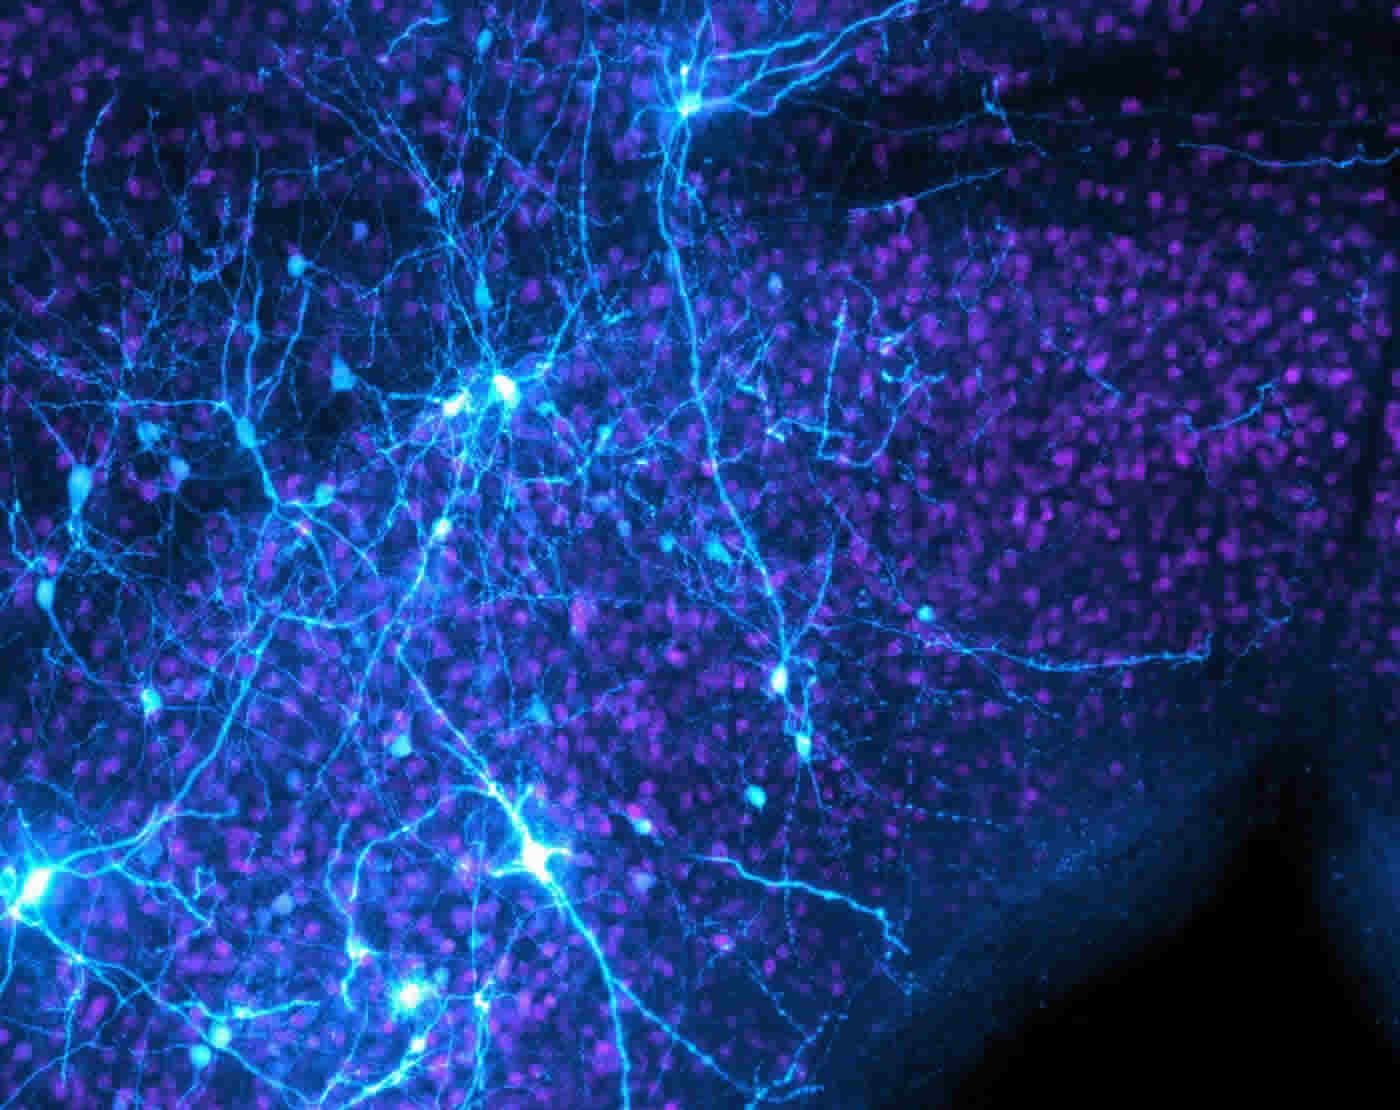 midbrain neurons